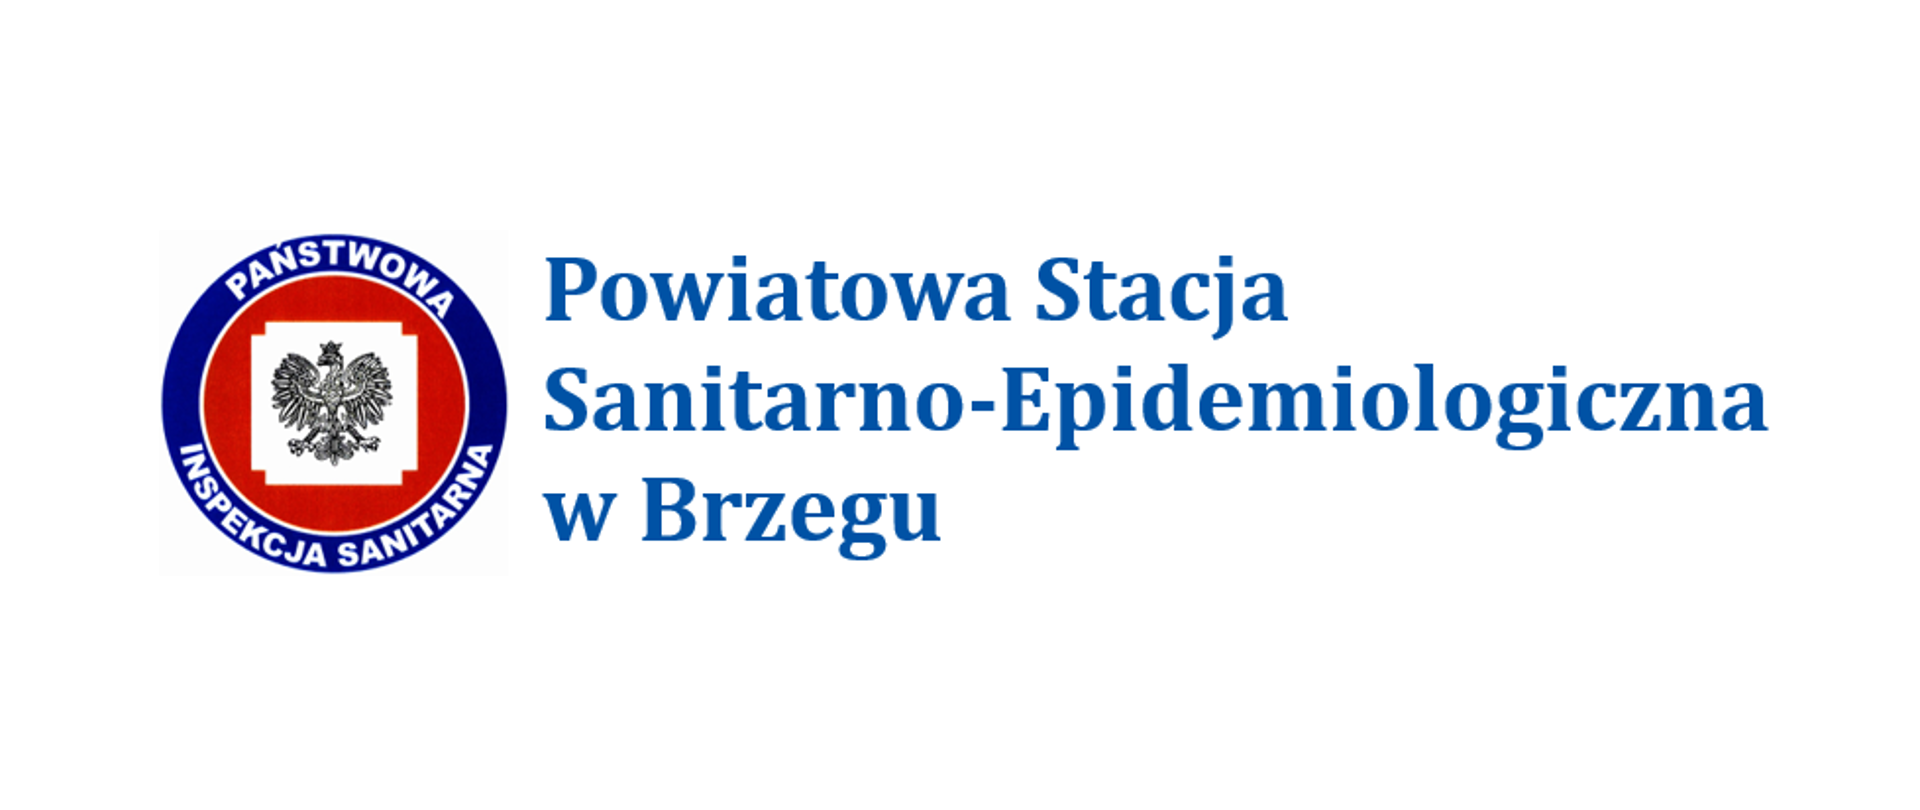 LOGO Państwowej Inspekcji Sanitarnej i napis w trzech rzędach - Powiatowa Stacja Sanitarno-Epidemiologiczna w Brzegu.